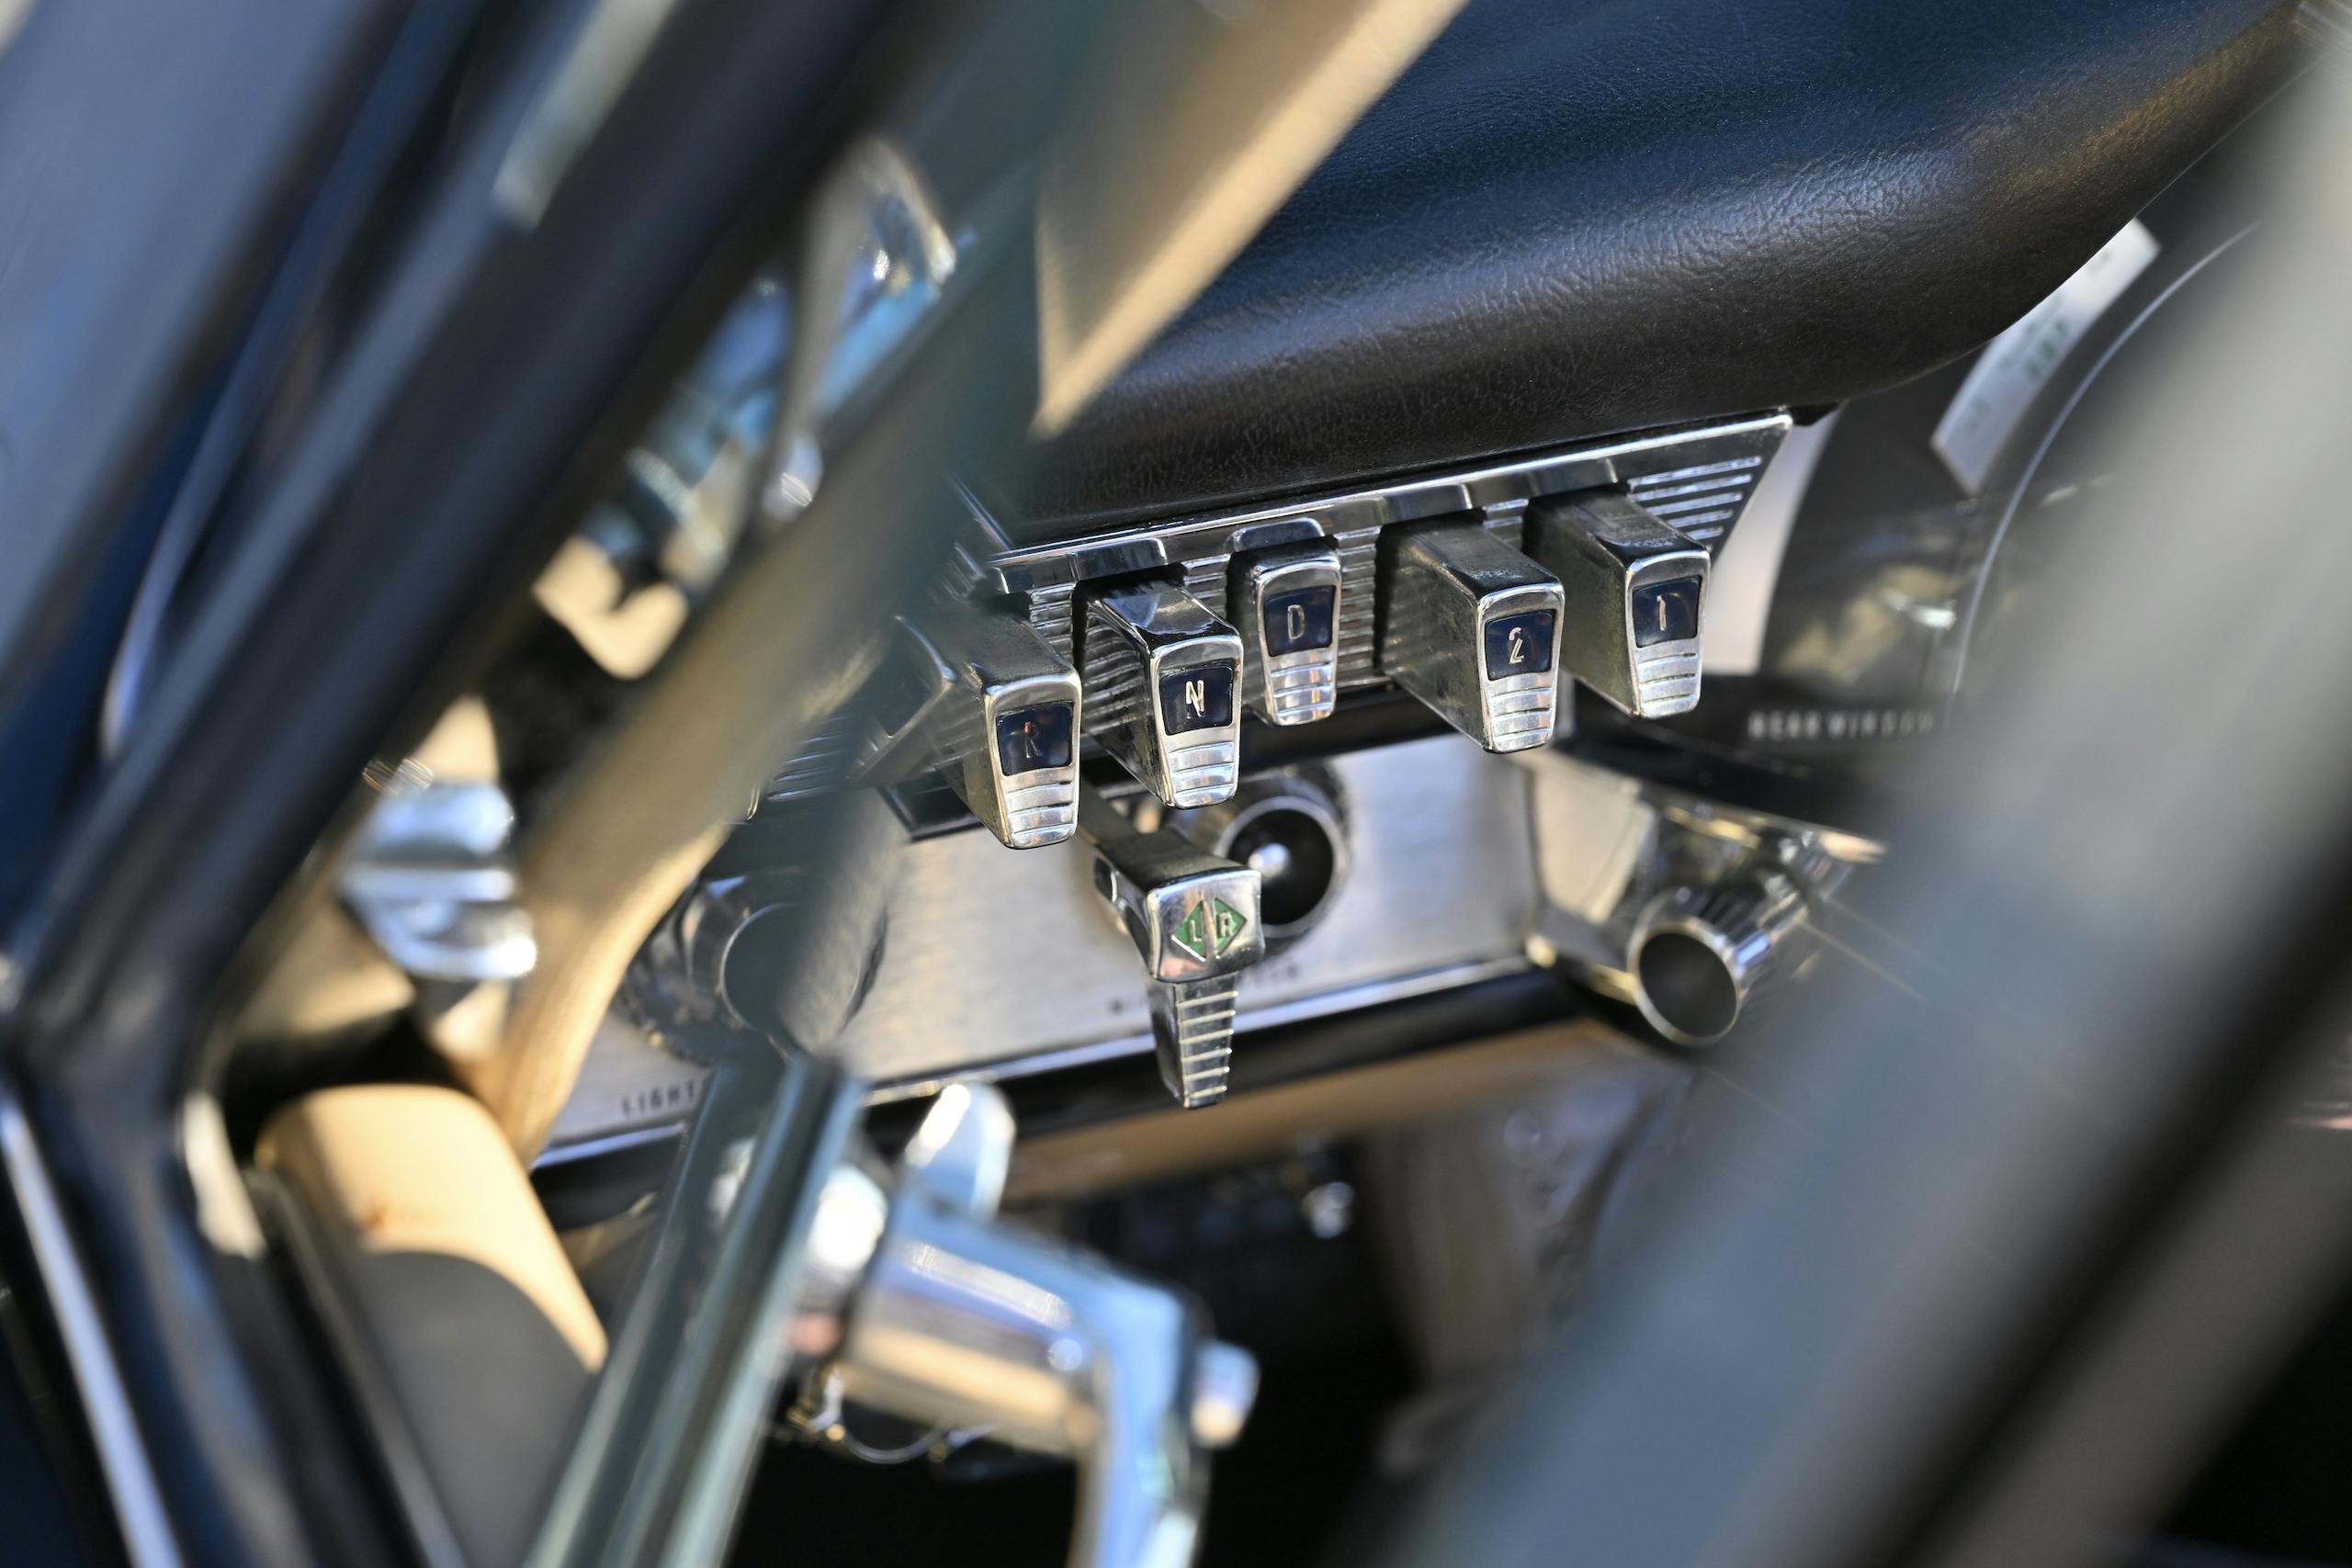 Chrysler gear buttons